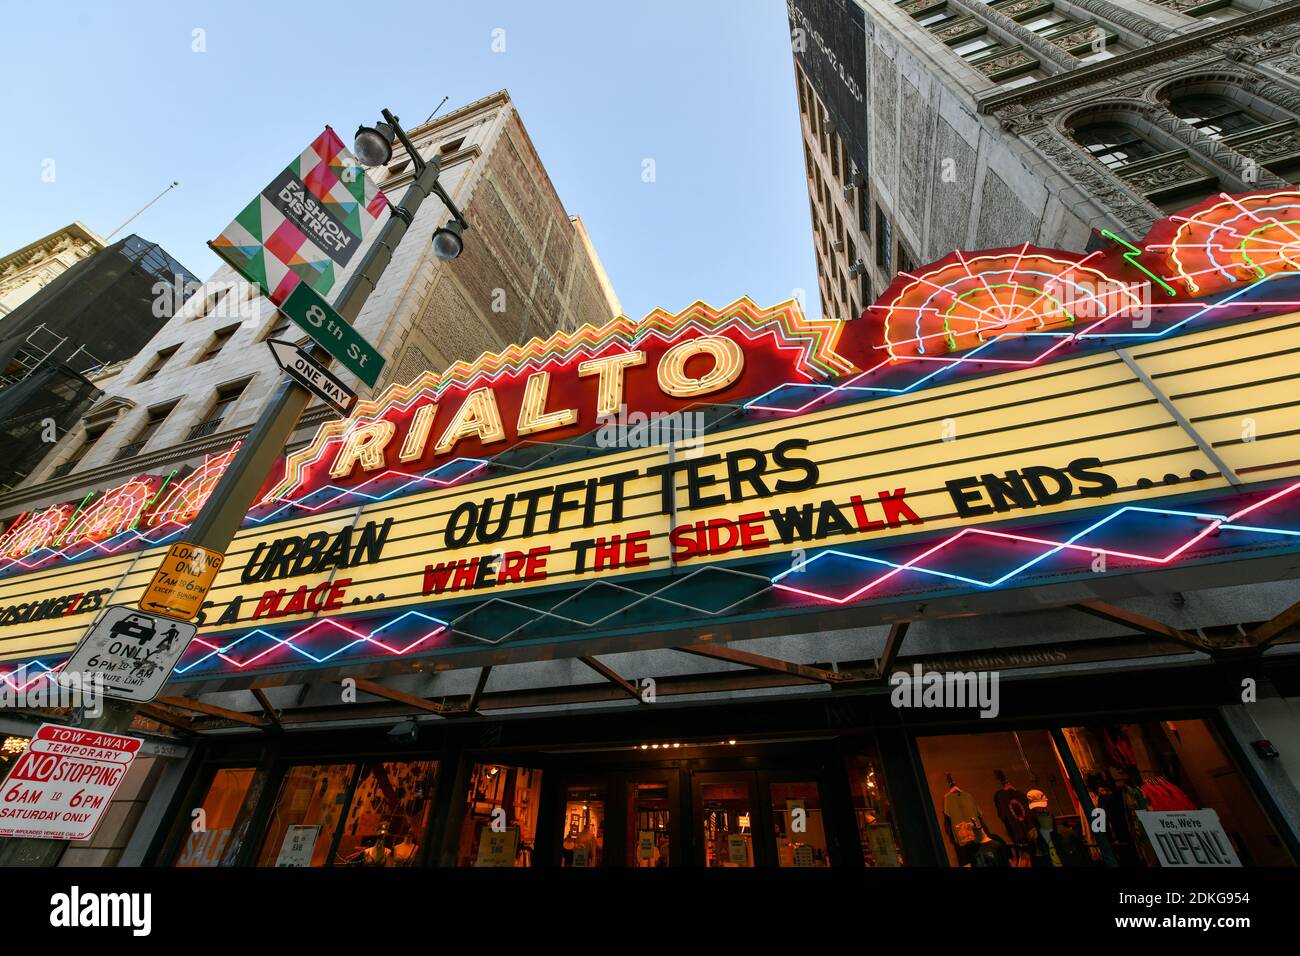 Los Angeles, California - 26 agosto 2020: Rialto Cinema Theater nel centro di Los Angeles, attualmente un Urban Outfitters Store. Foto Stock